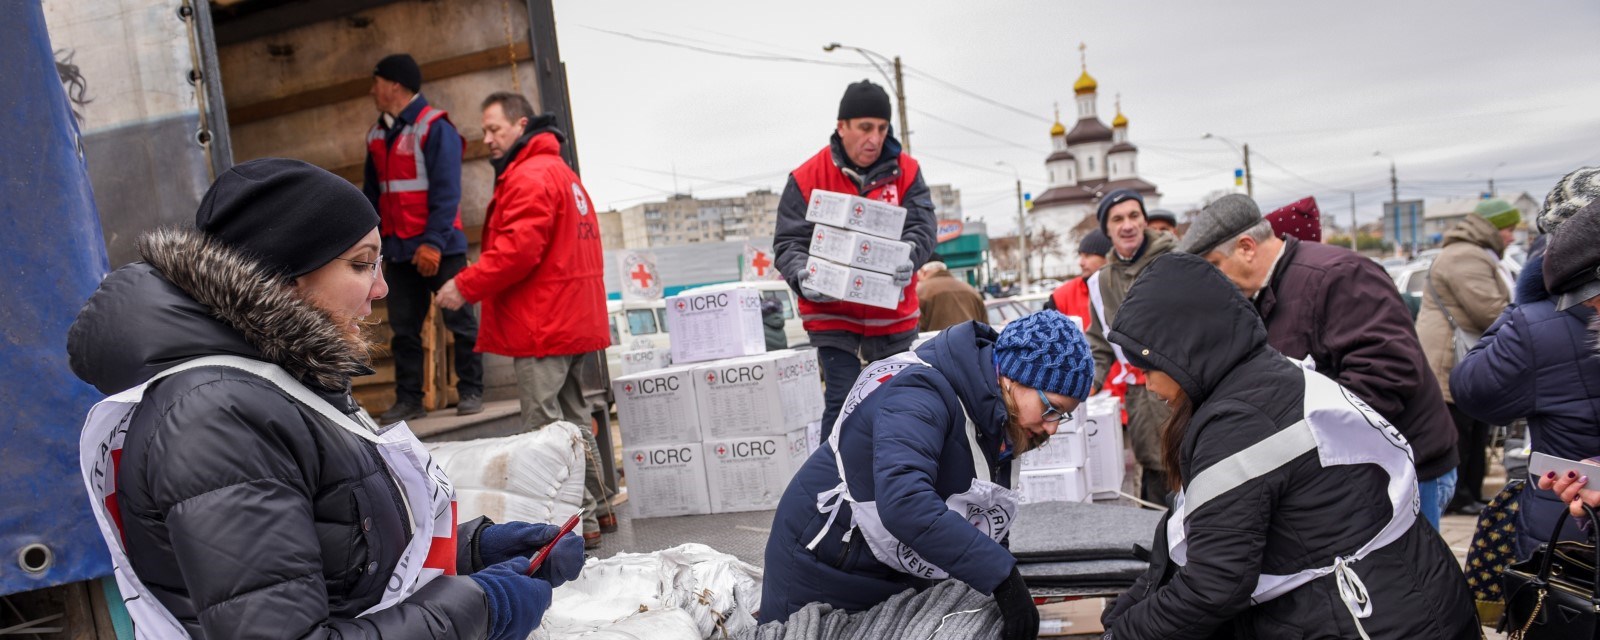 Mange personer fra Røde Kors laster av esker med nødhjelp fra en lastebil.